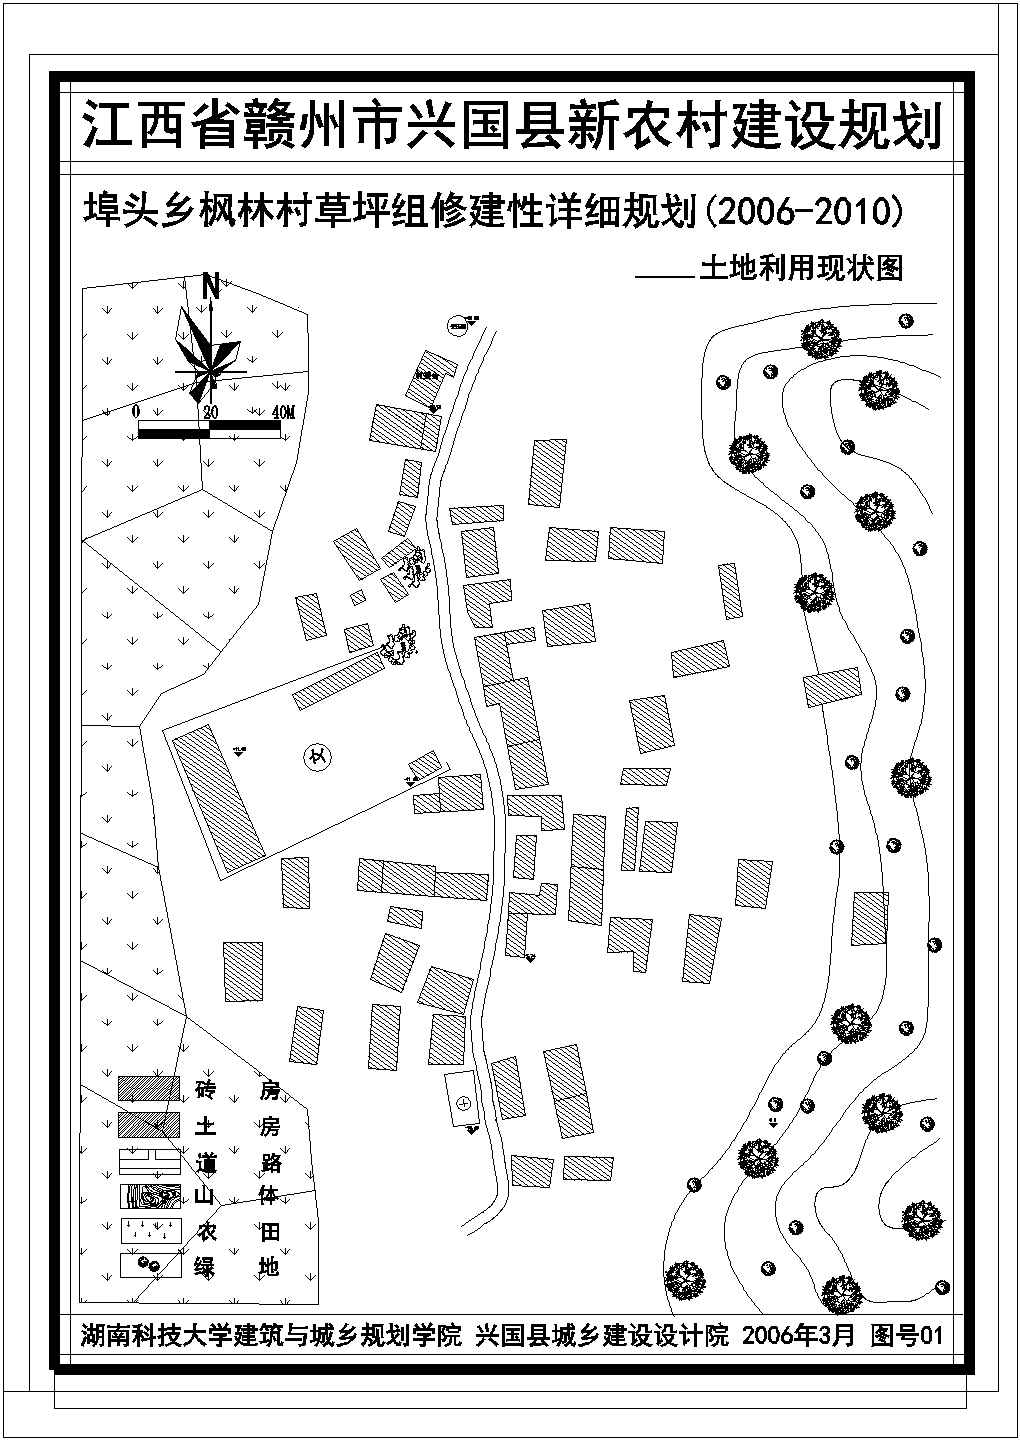 江苏省连云港市市区某街道规划设计详细CAD图纸